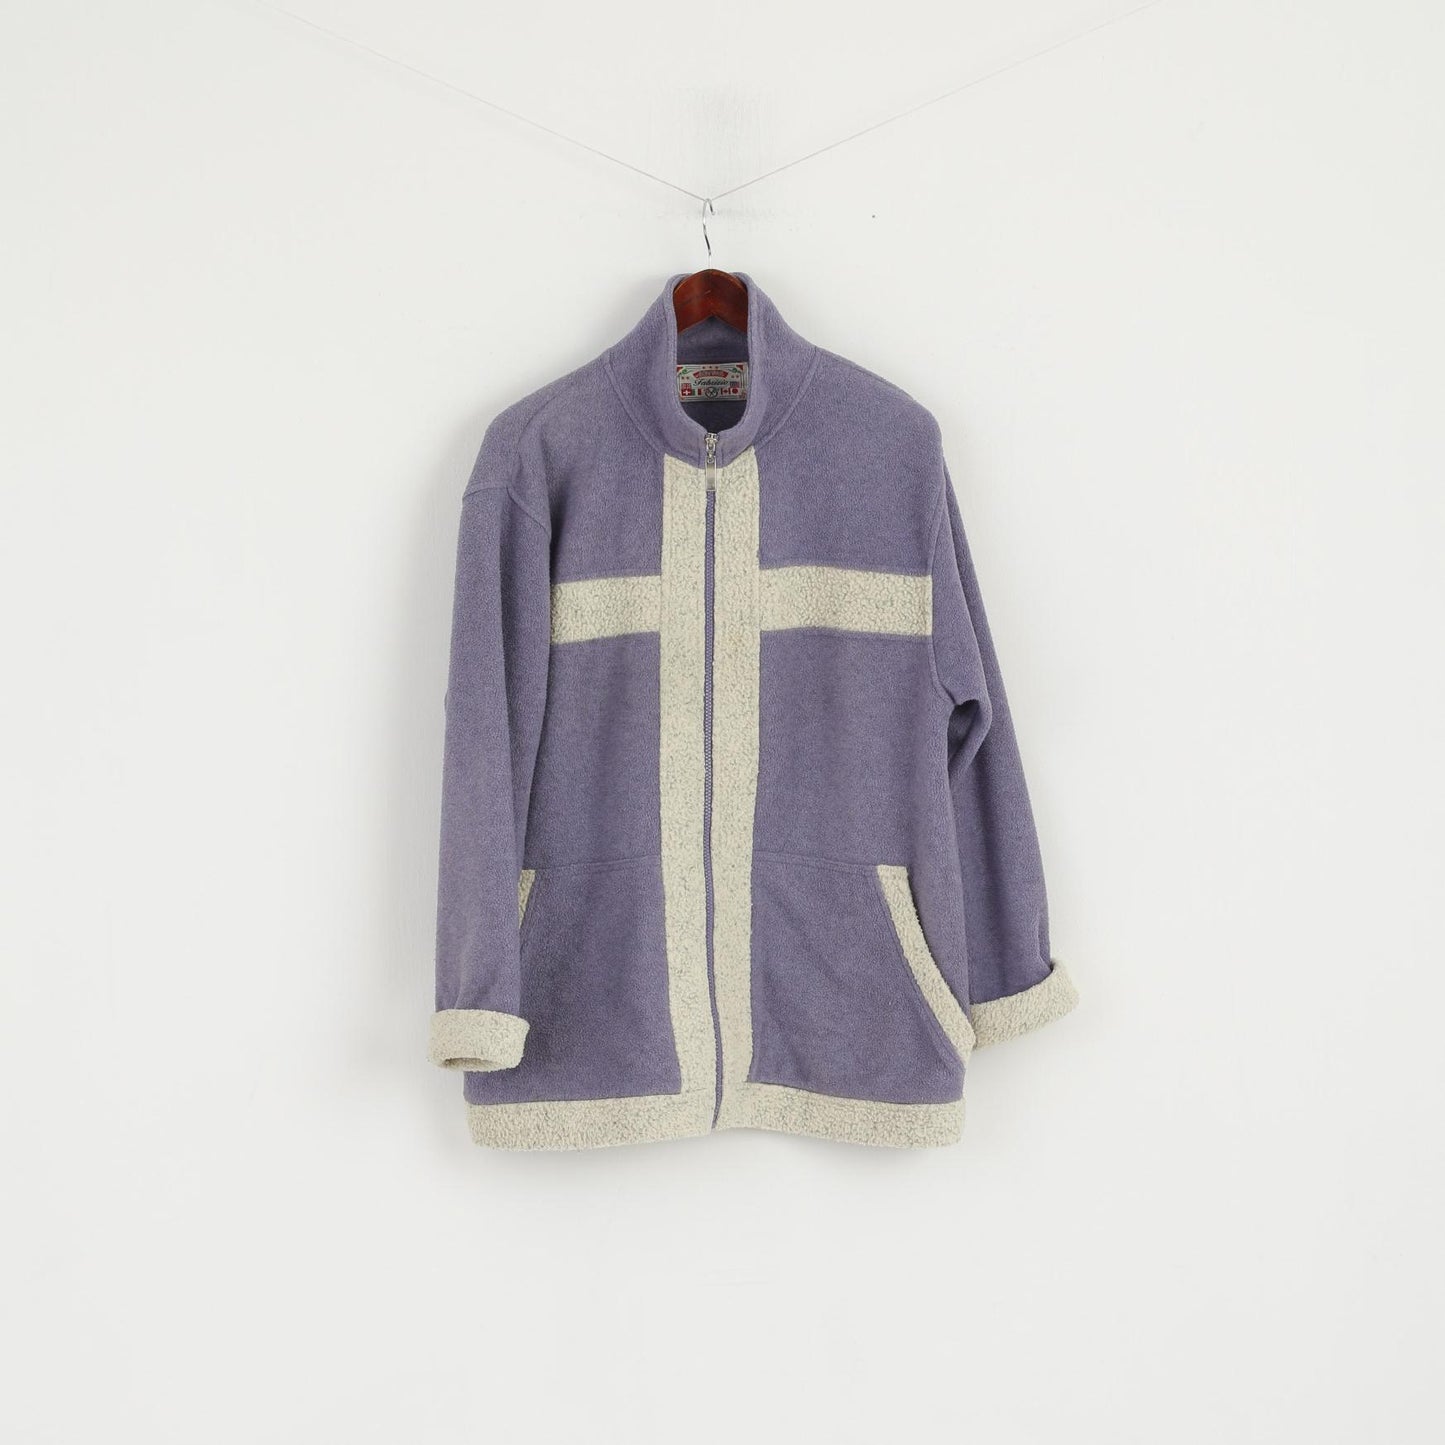 Fabrizio Women M/L Fleece Top Purple Full Zipper Classic Vintage Sweatshirt